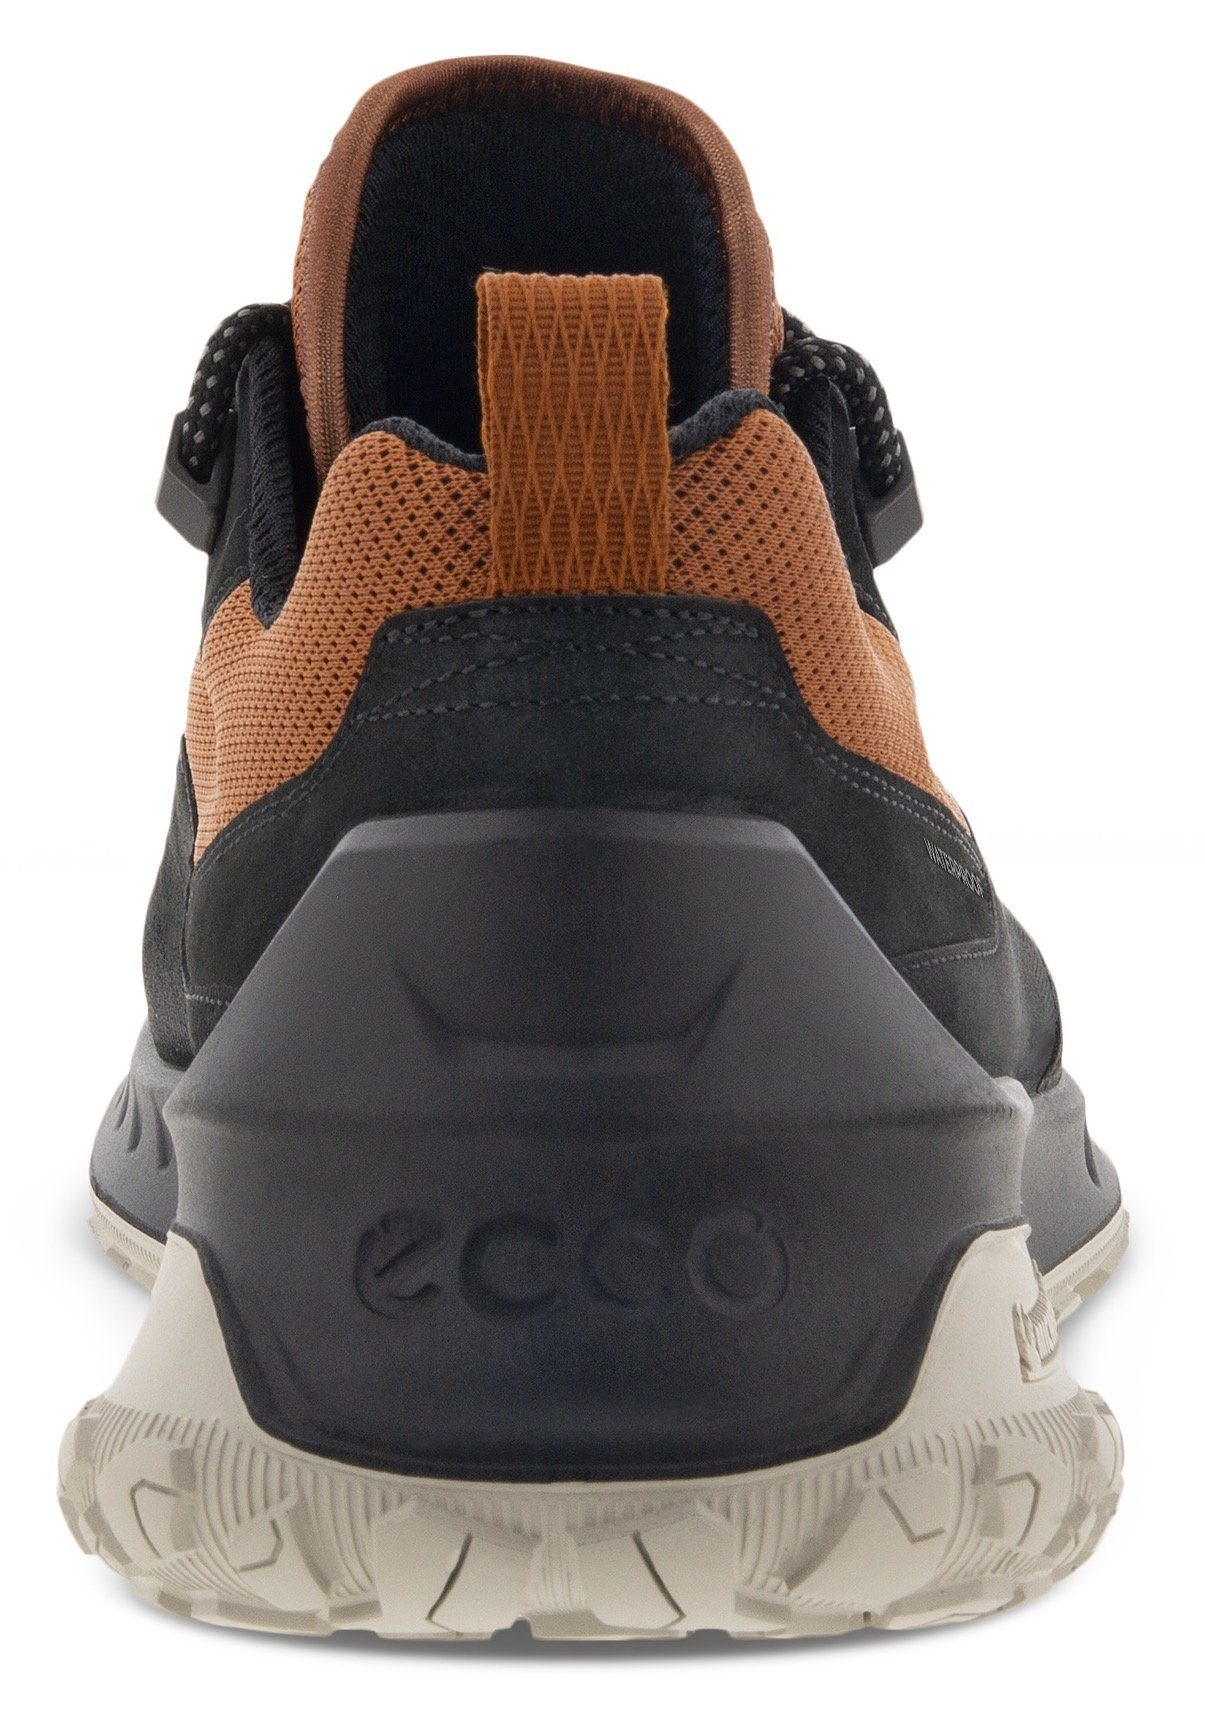 Laufsohle M Sneaker Michelin-Technologie cognac-schwarz mit ULT-TRN Ecco sportive